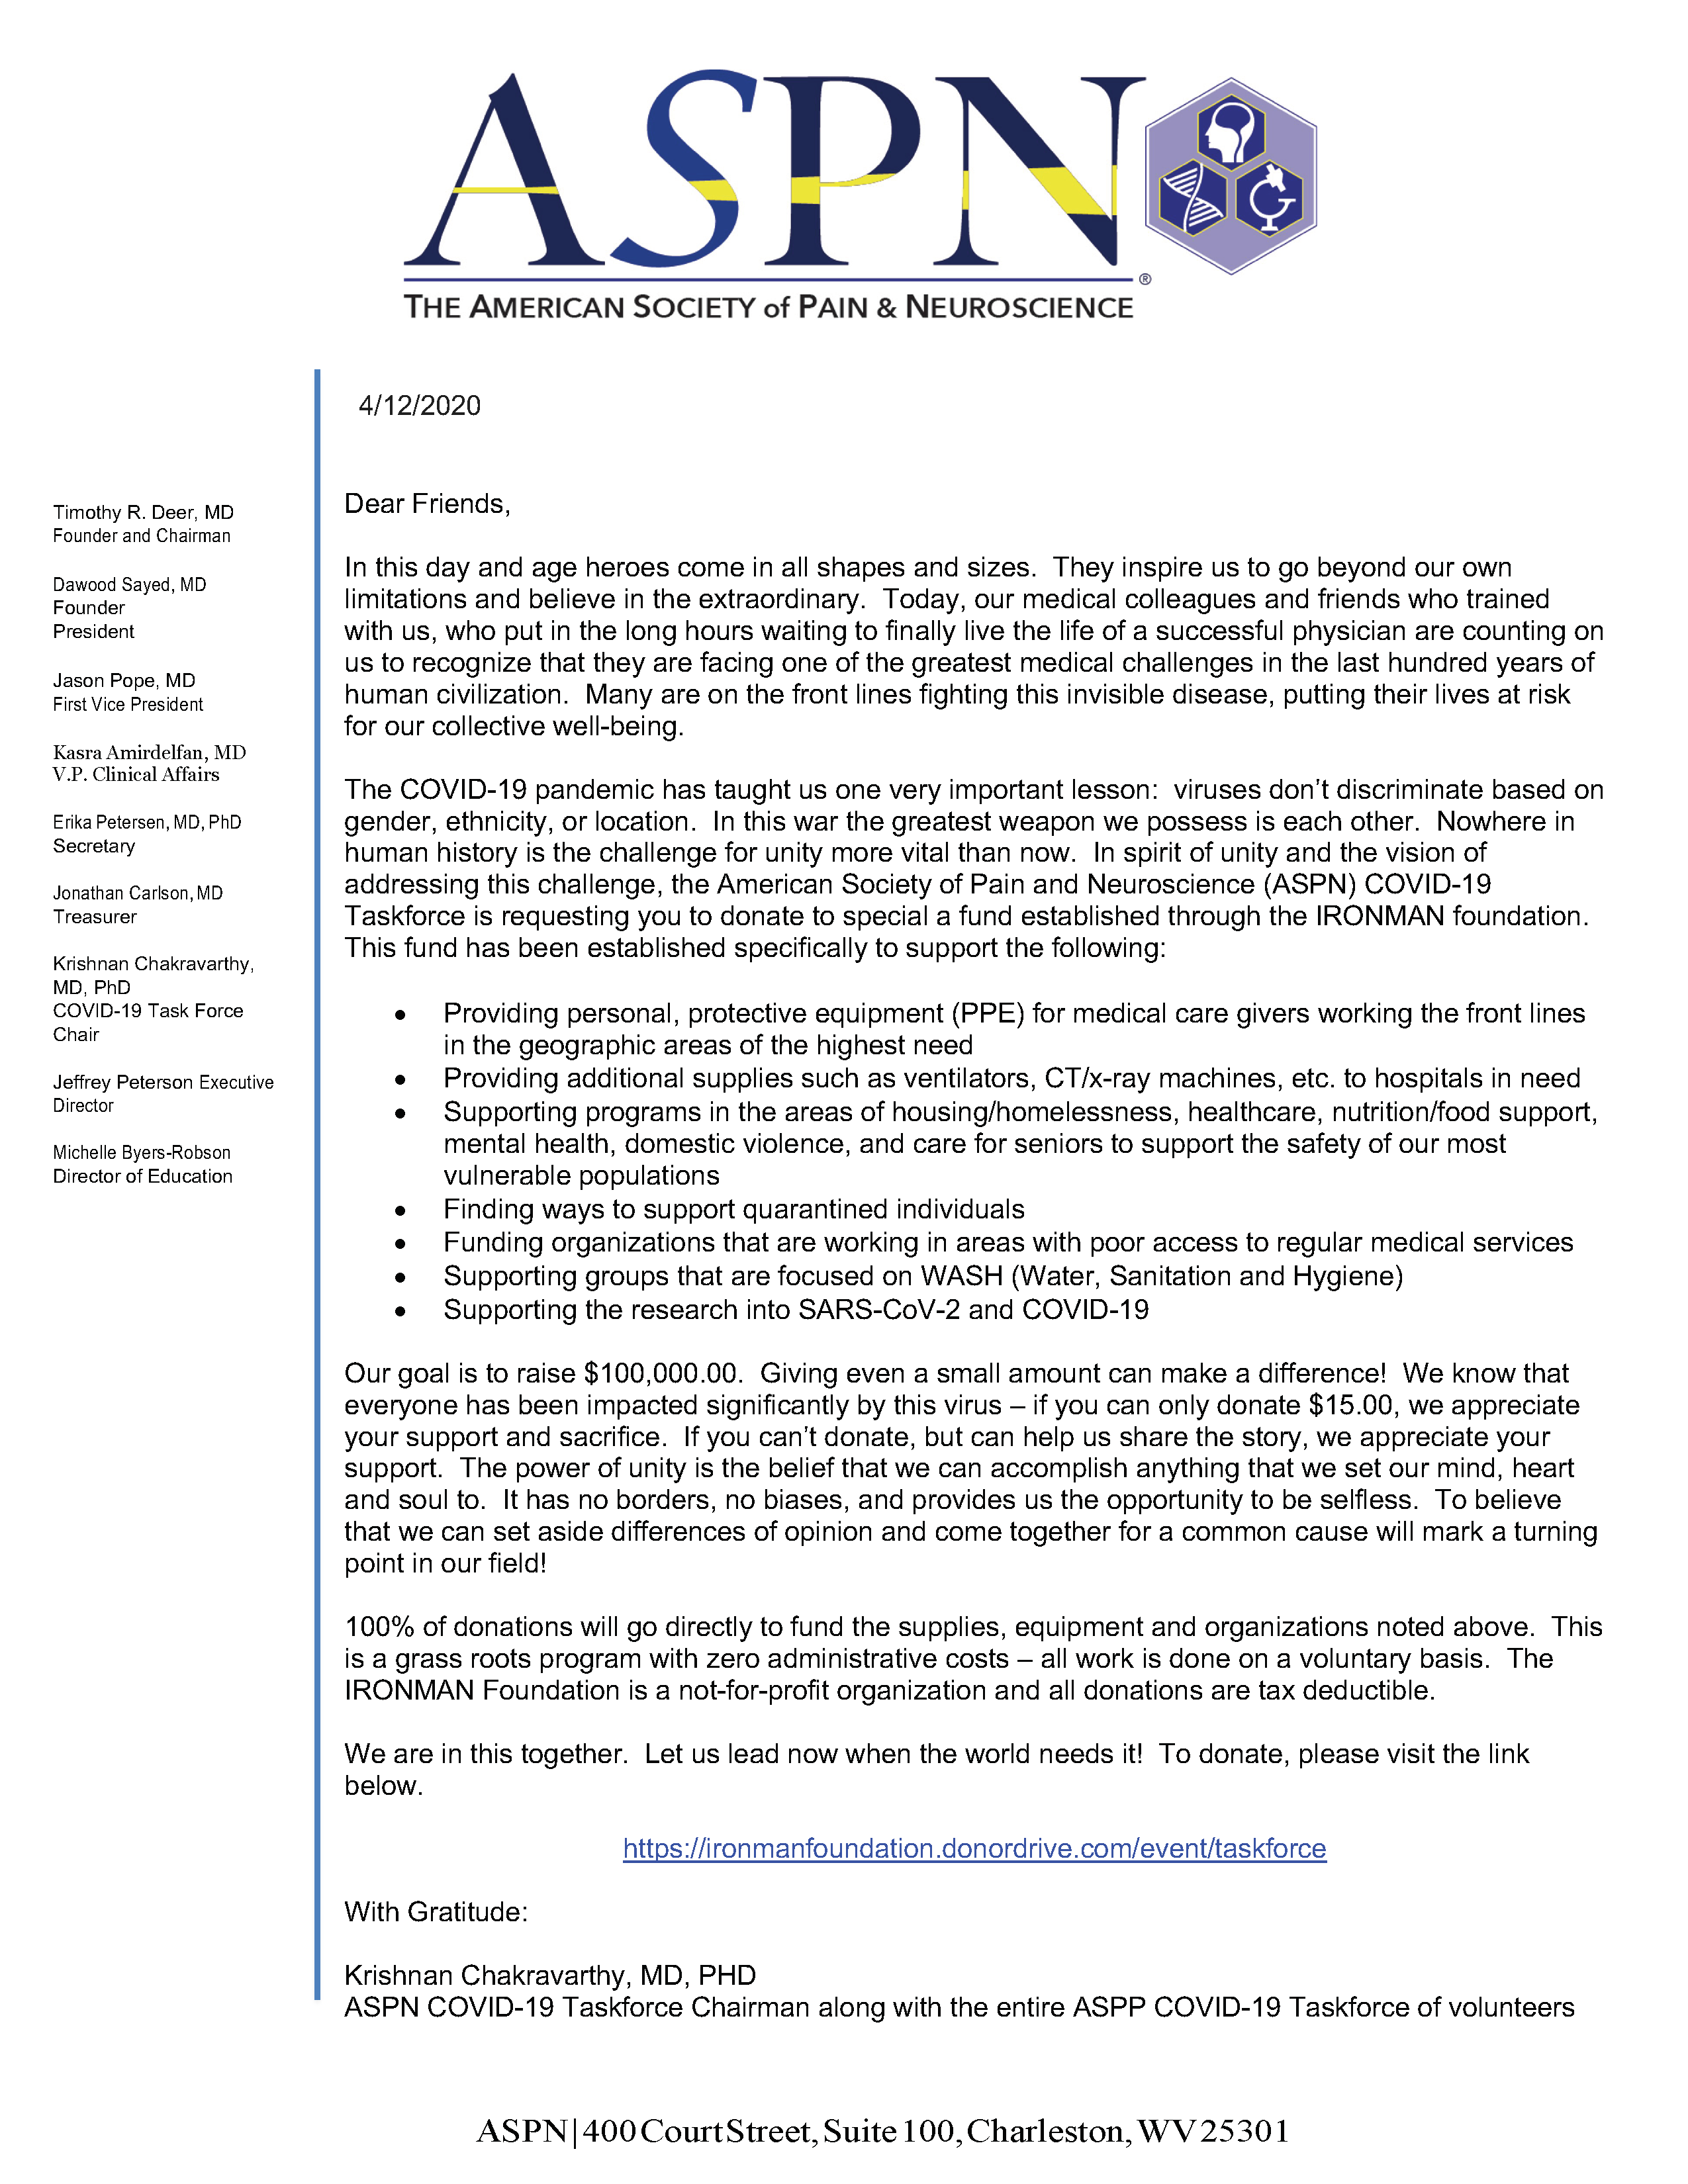 ASPN COVID-19 Taskforce Donation Letter